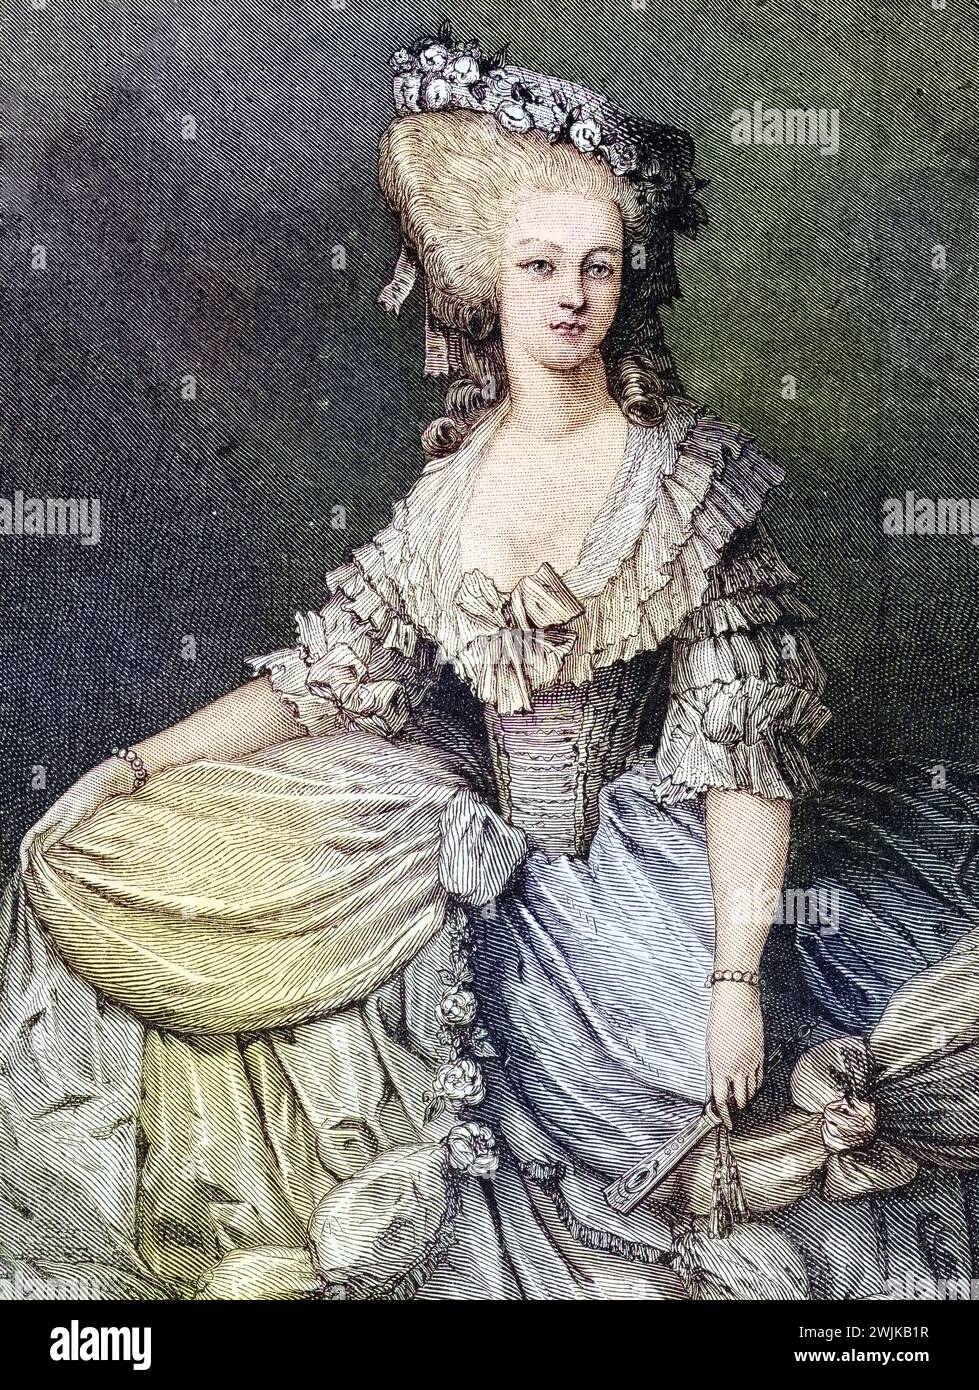 Marie-Louise von Savoyen (geb. 8. Septembre 1749 à Turin ; Gest. 3. Septembre 1792 à Paris) War eine geborene Prinzessin von Savoyen, Historisch, digital restaurierte Reproduktion von einer Vorlage aus dem 19. Jahrhundert, date du dossier non précisée Banque D'Images